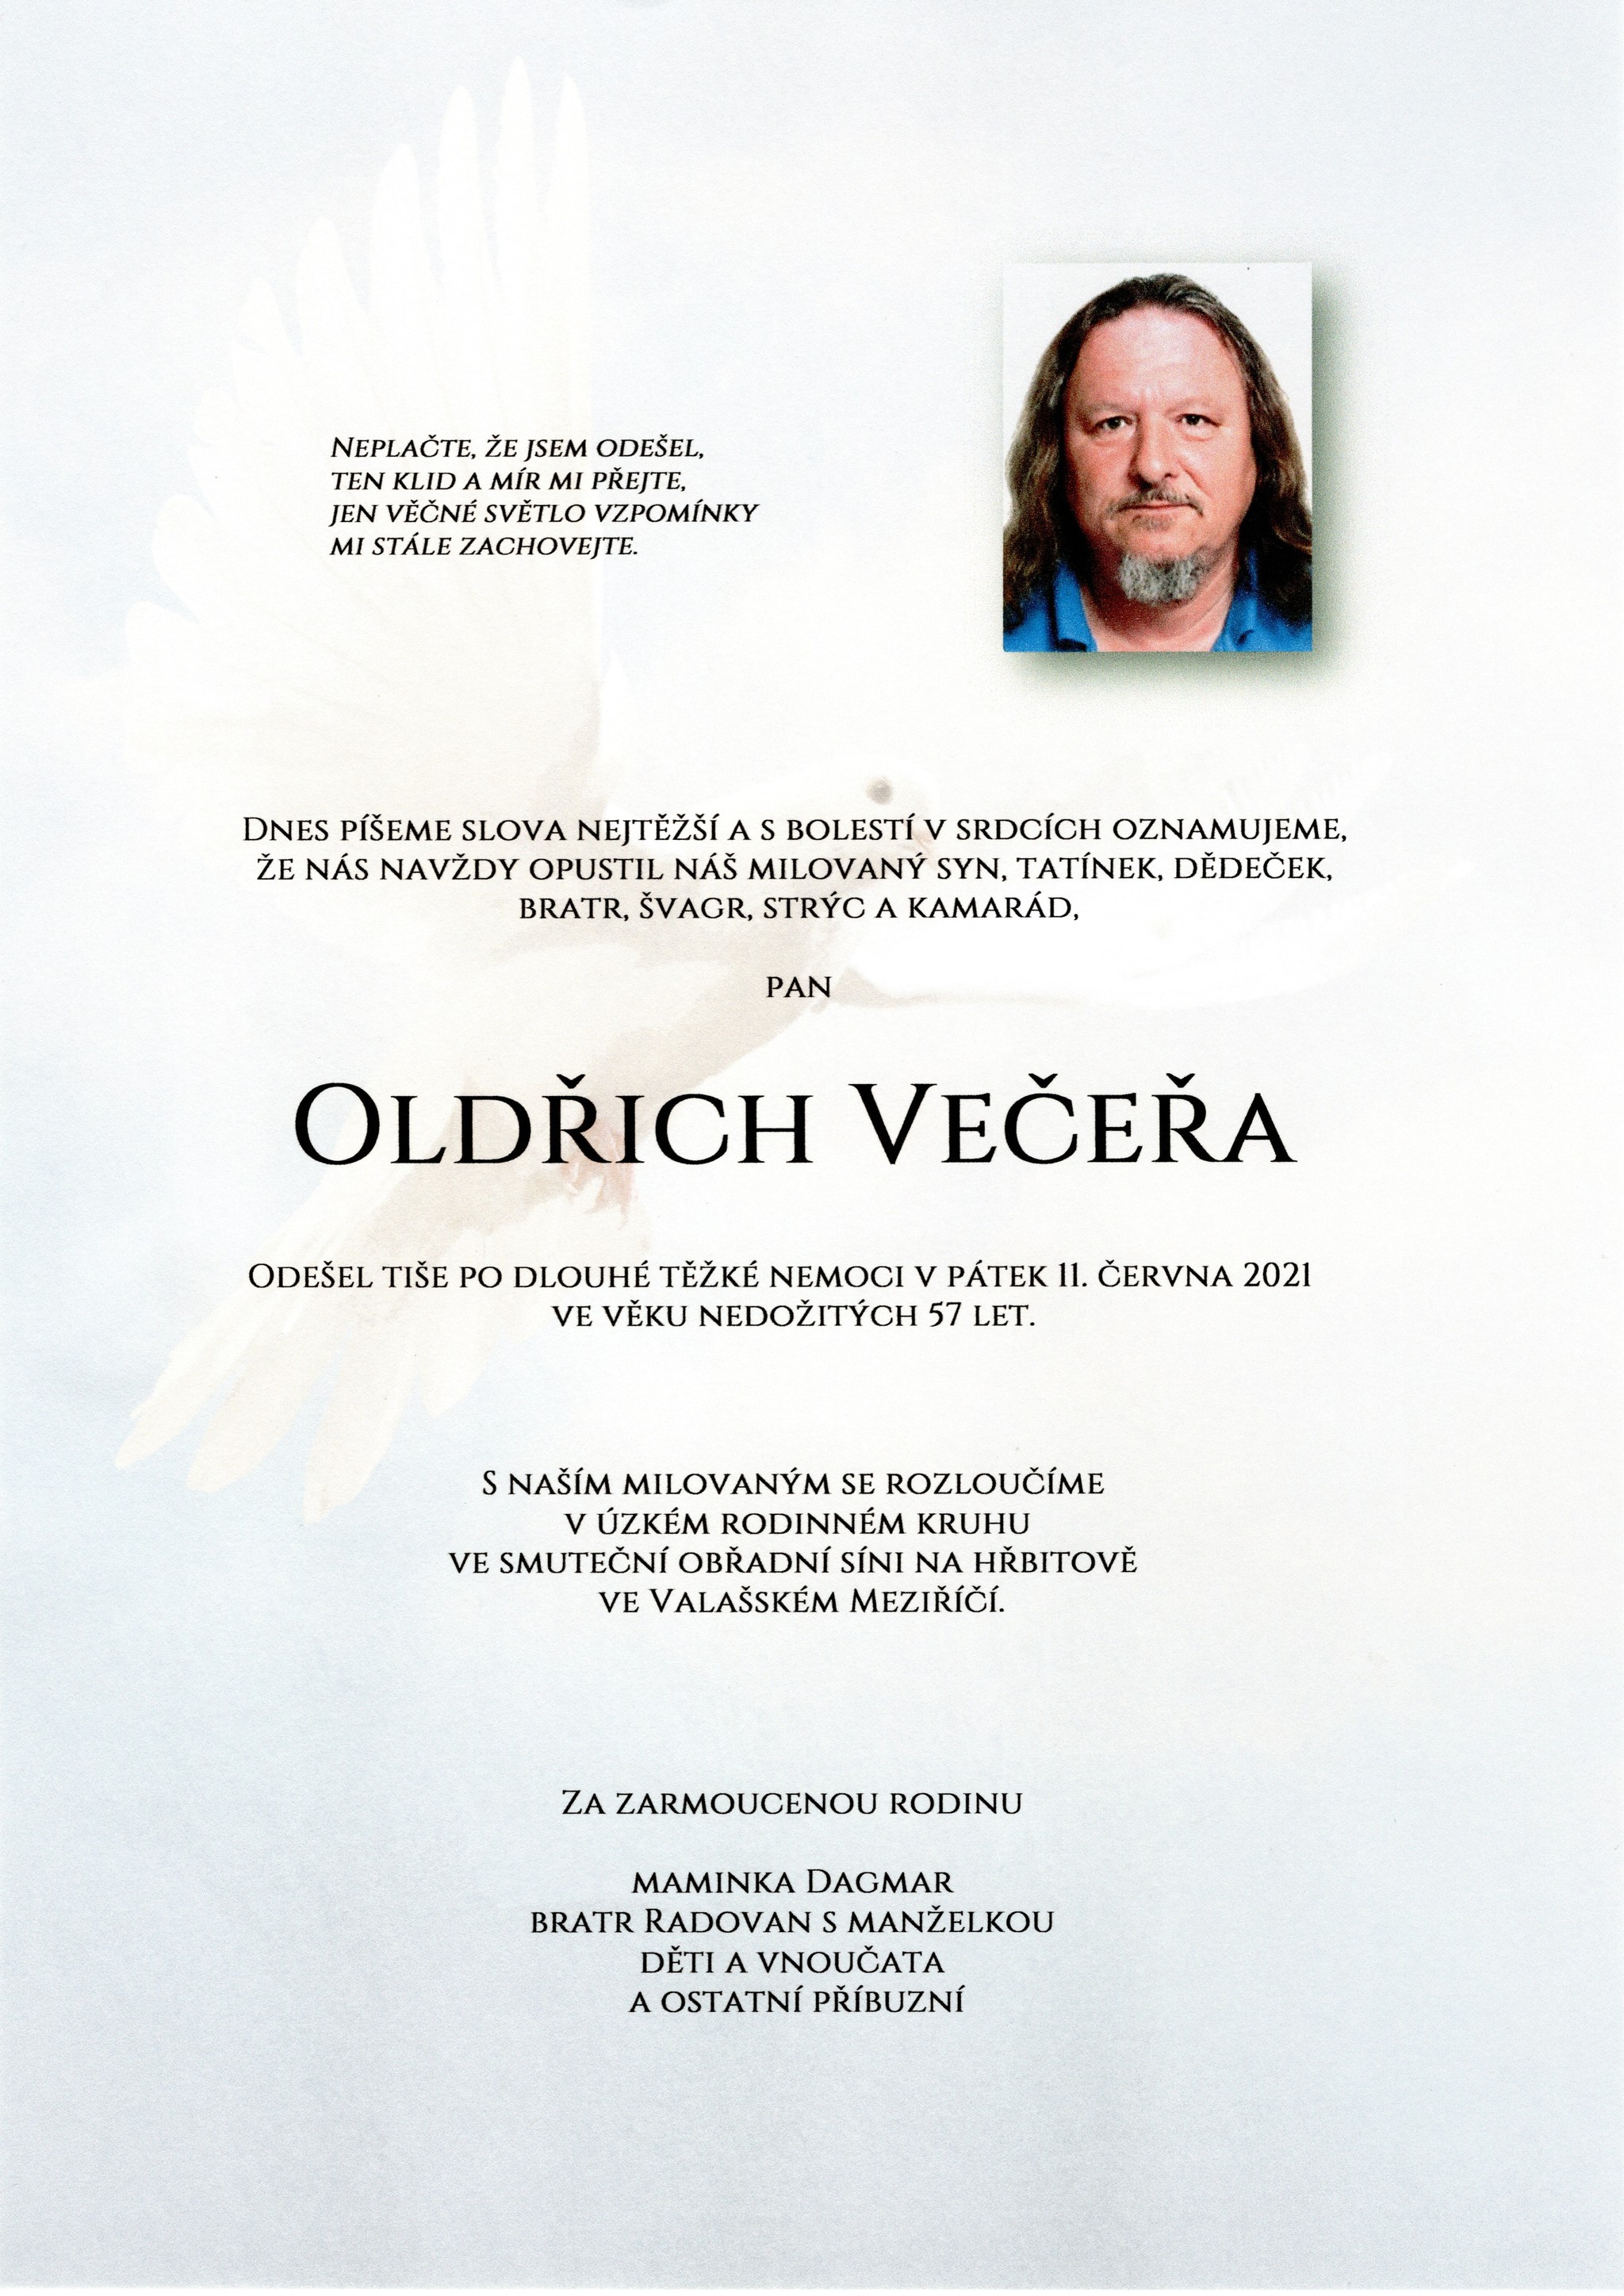 Oldřich Večeřa